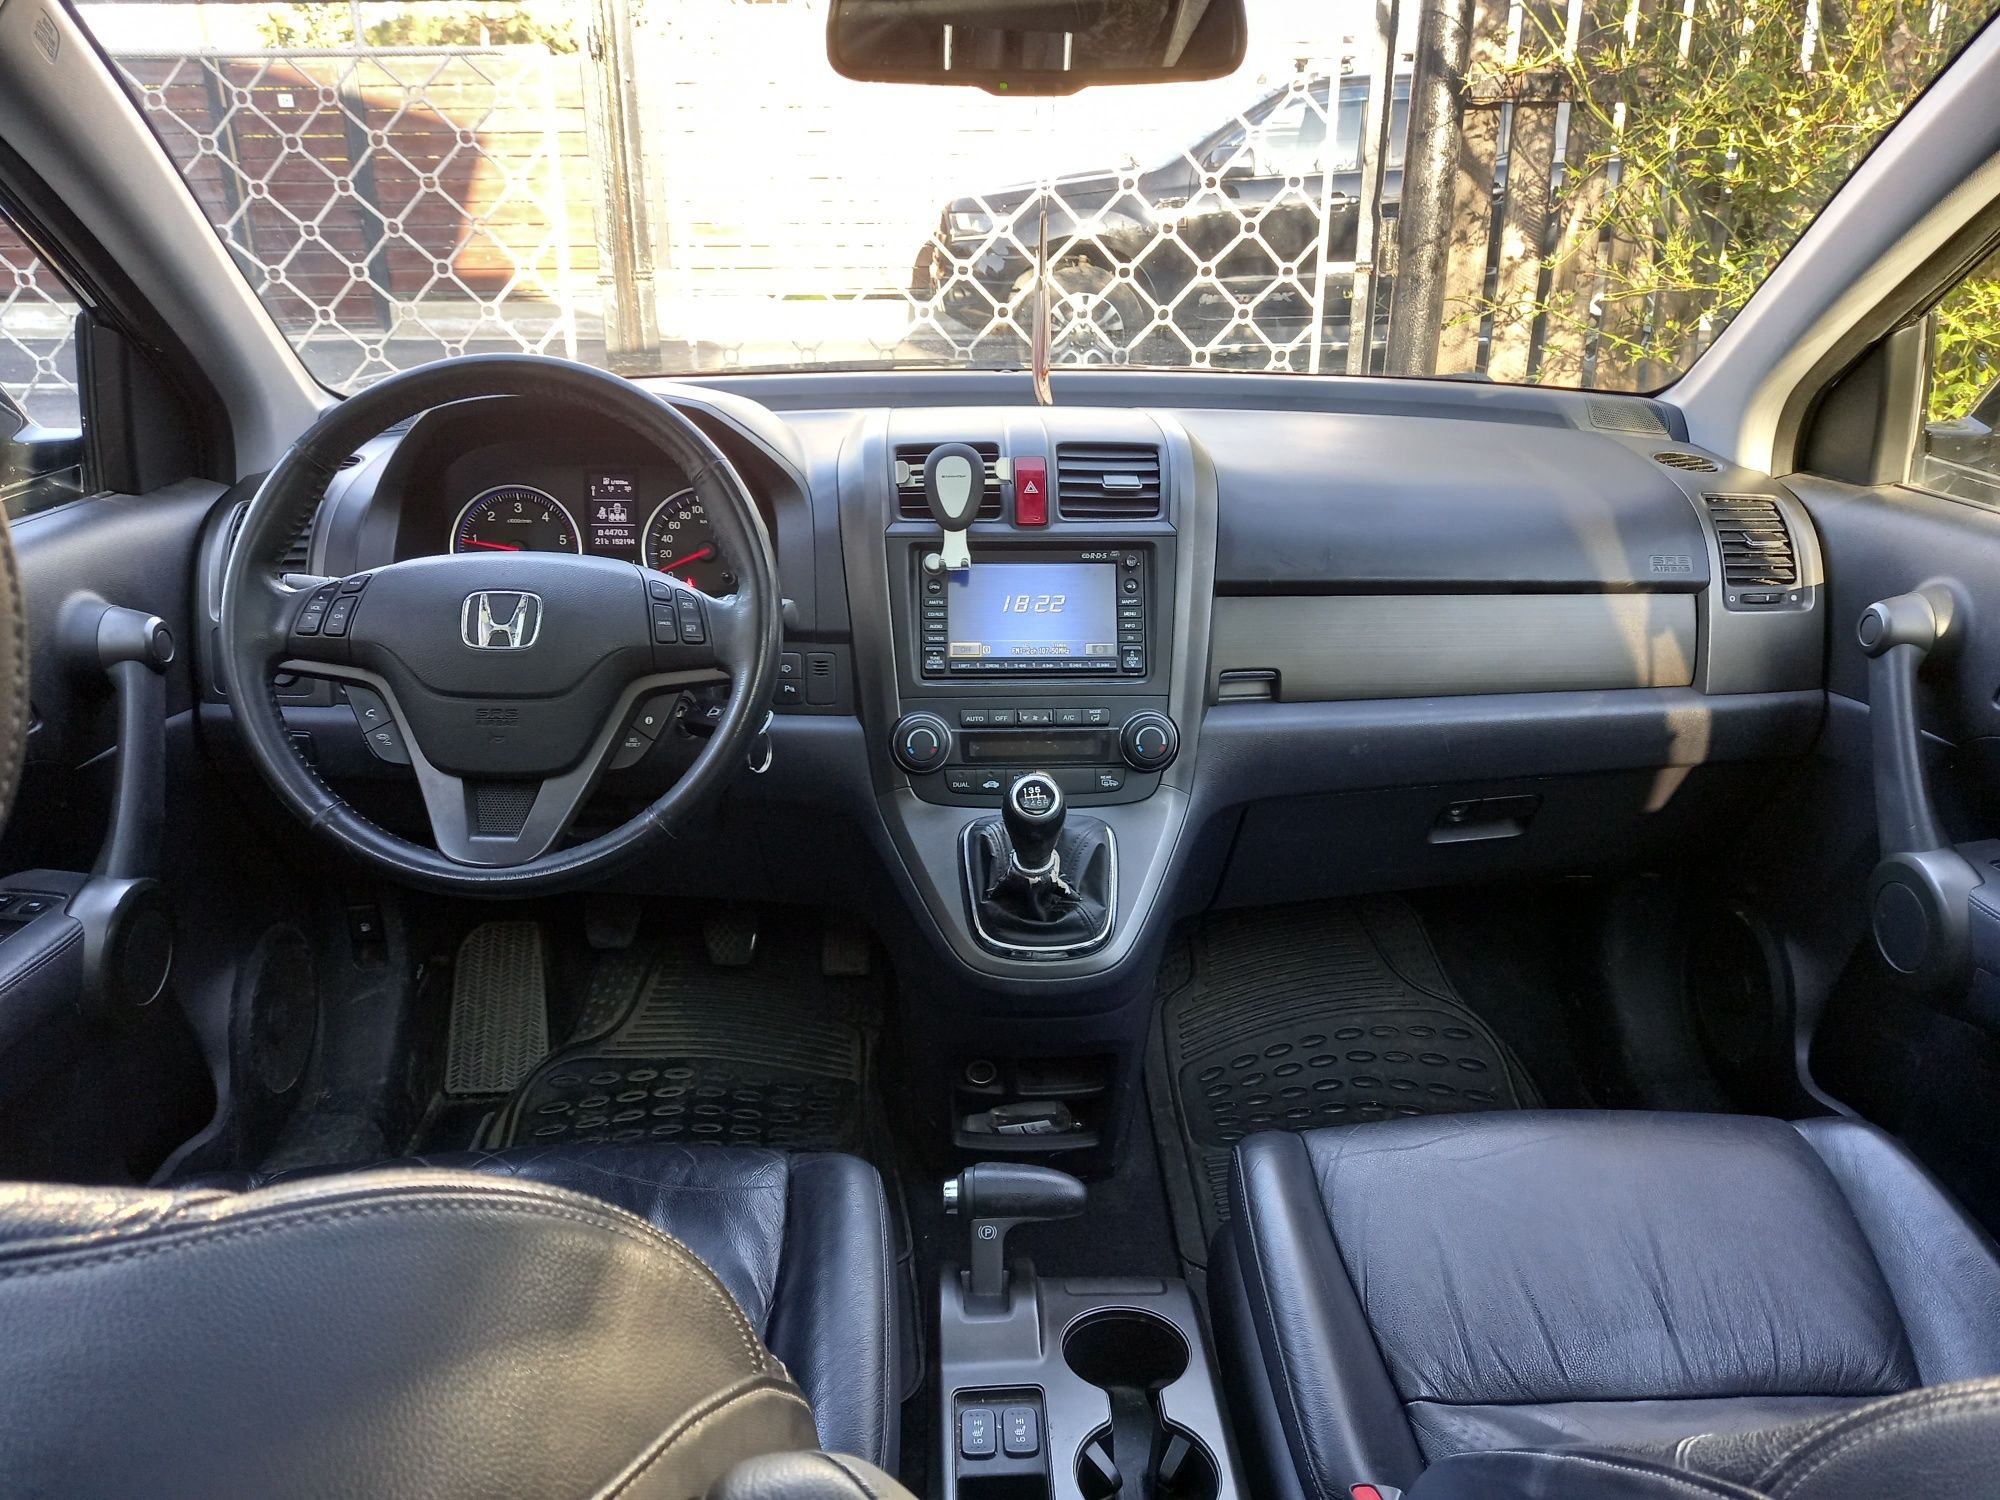 Honda CR-V 4x4 2.2 diesel